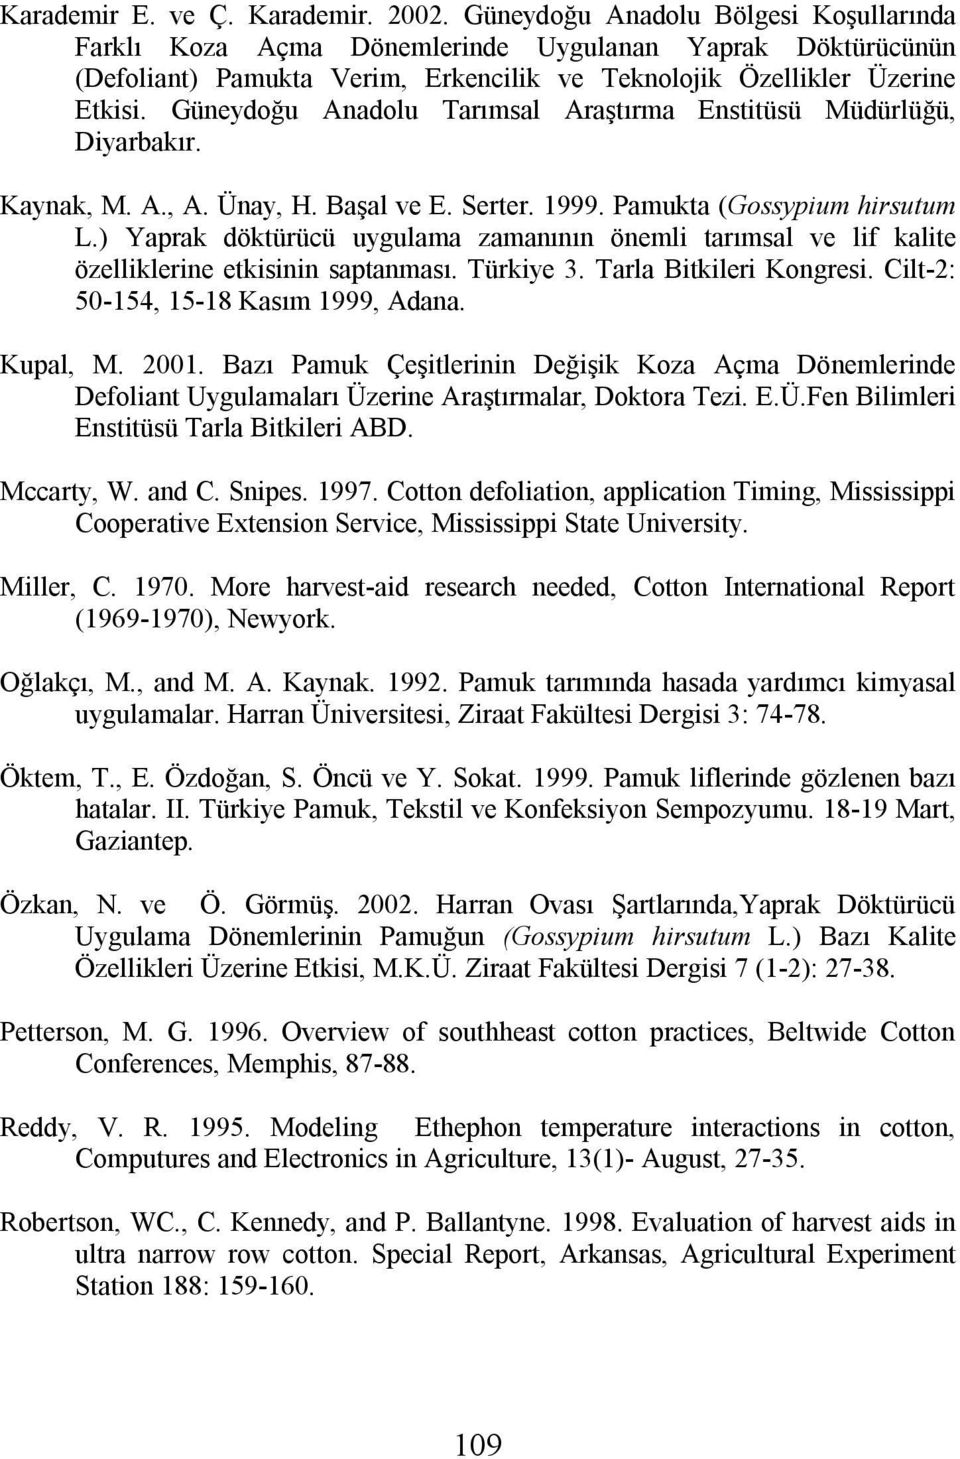 Güneydoğu Anadolu Tarımsal Araştırma Enstitüsü Müdürlüğü, Diyarbakır. Kaynak, M. A., A. Ünay, H. Başal ve E. Serter. 1999. Pamukta (Gossypium hirsutum L.